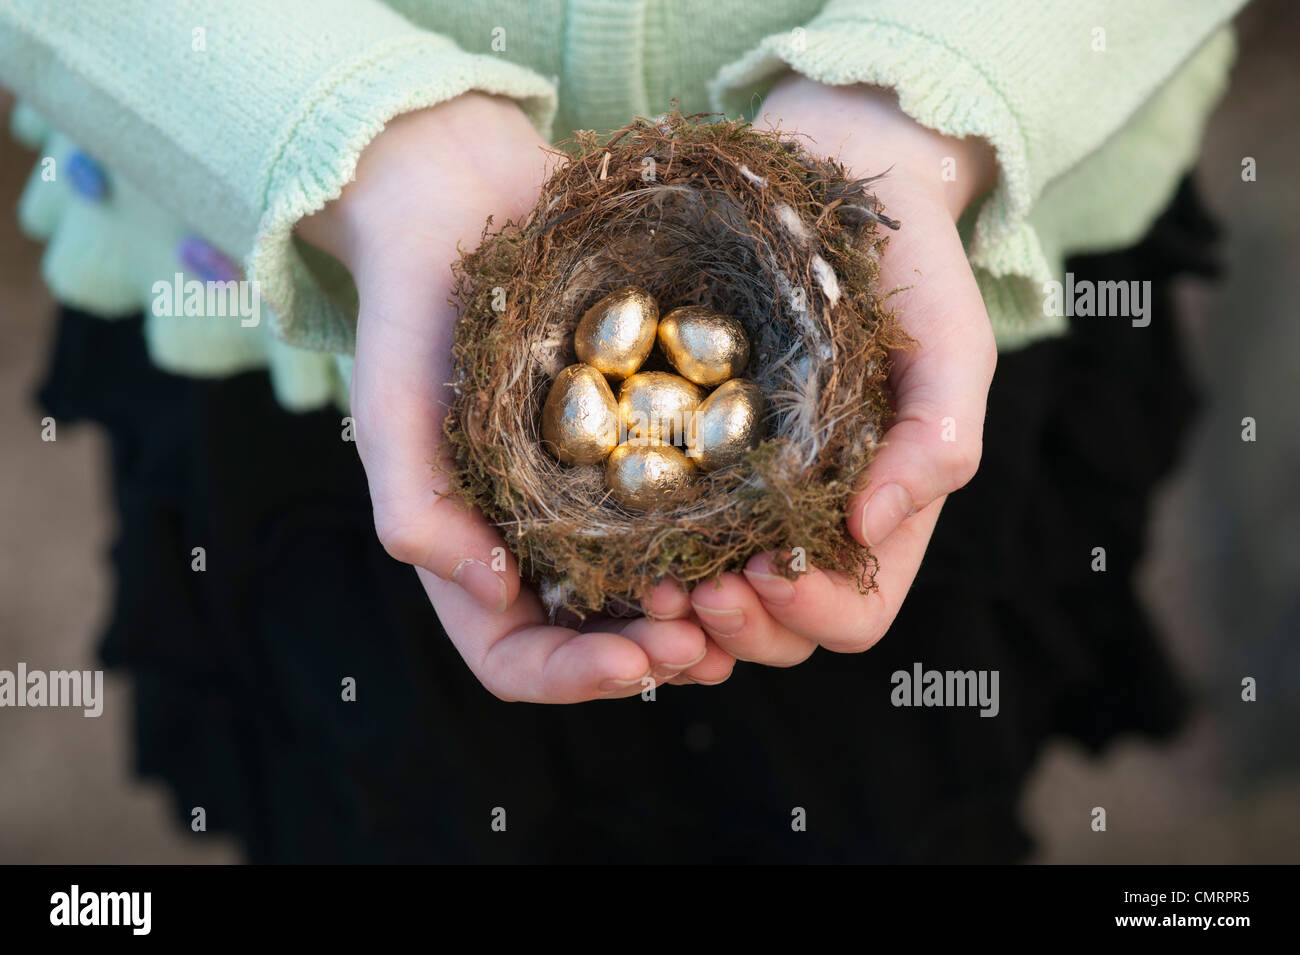 Girl holding golden eggs in a bird nest Stock Photo